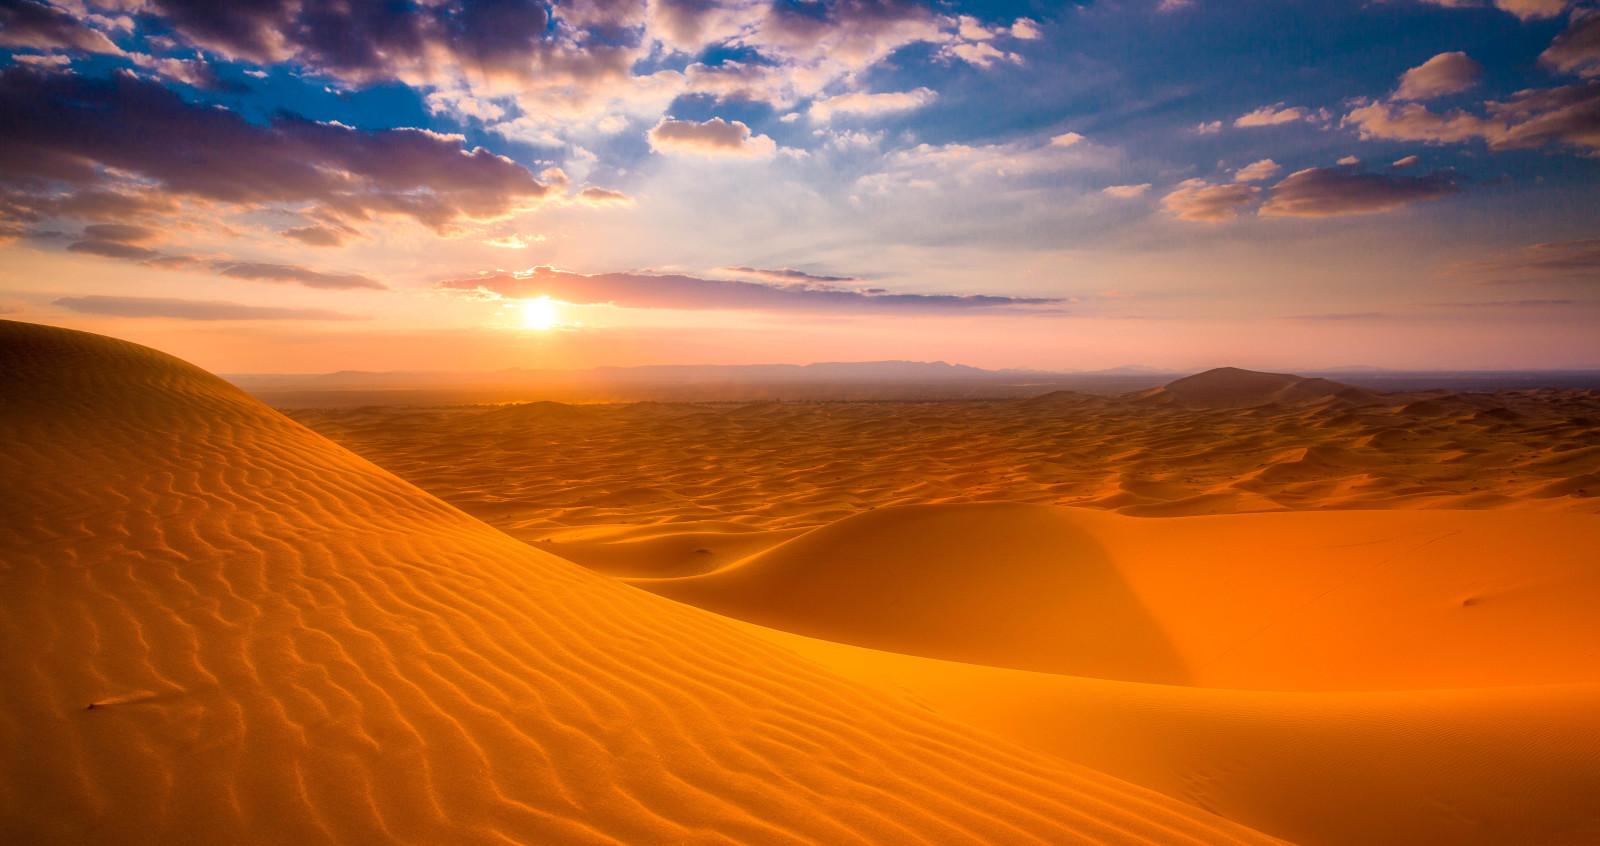 Hoàng hôn, Sa mạc, mặt trời, cát, Đường, Ma-rốc, vỏ cây